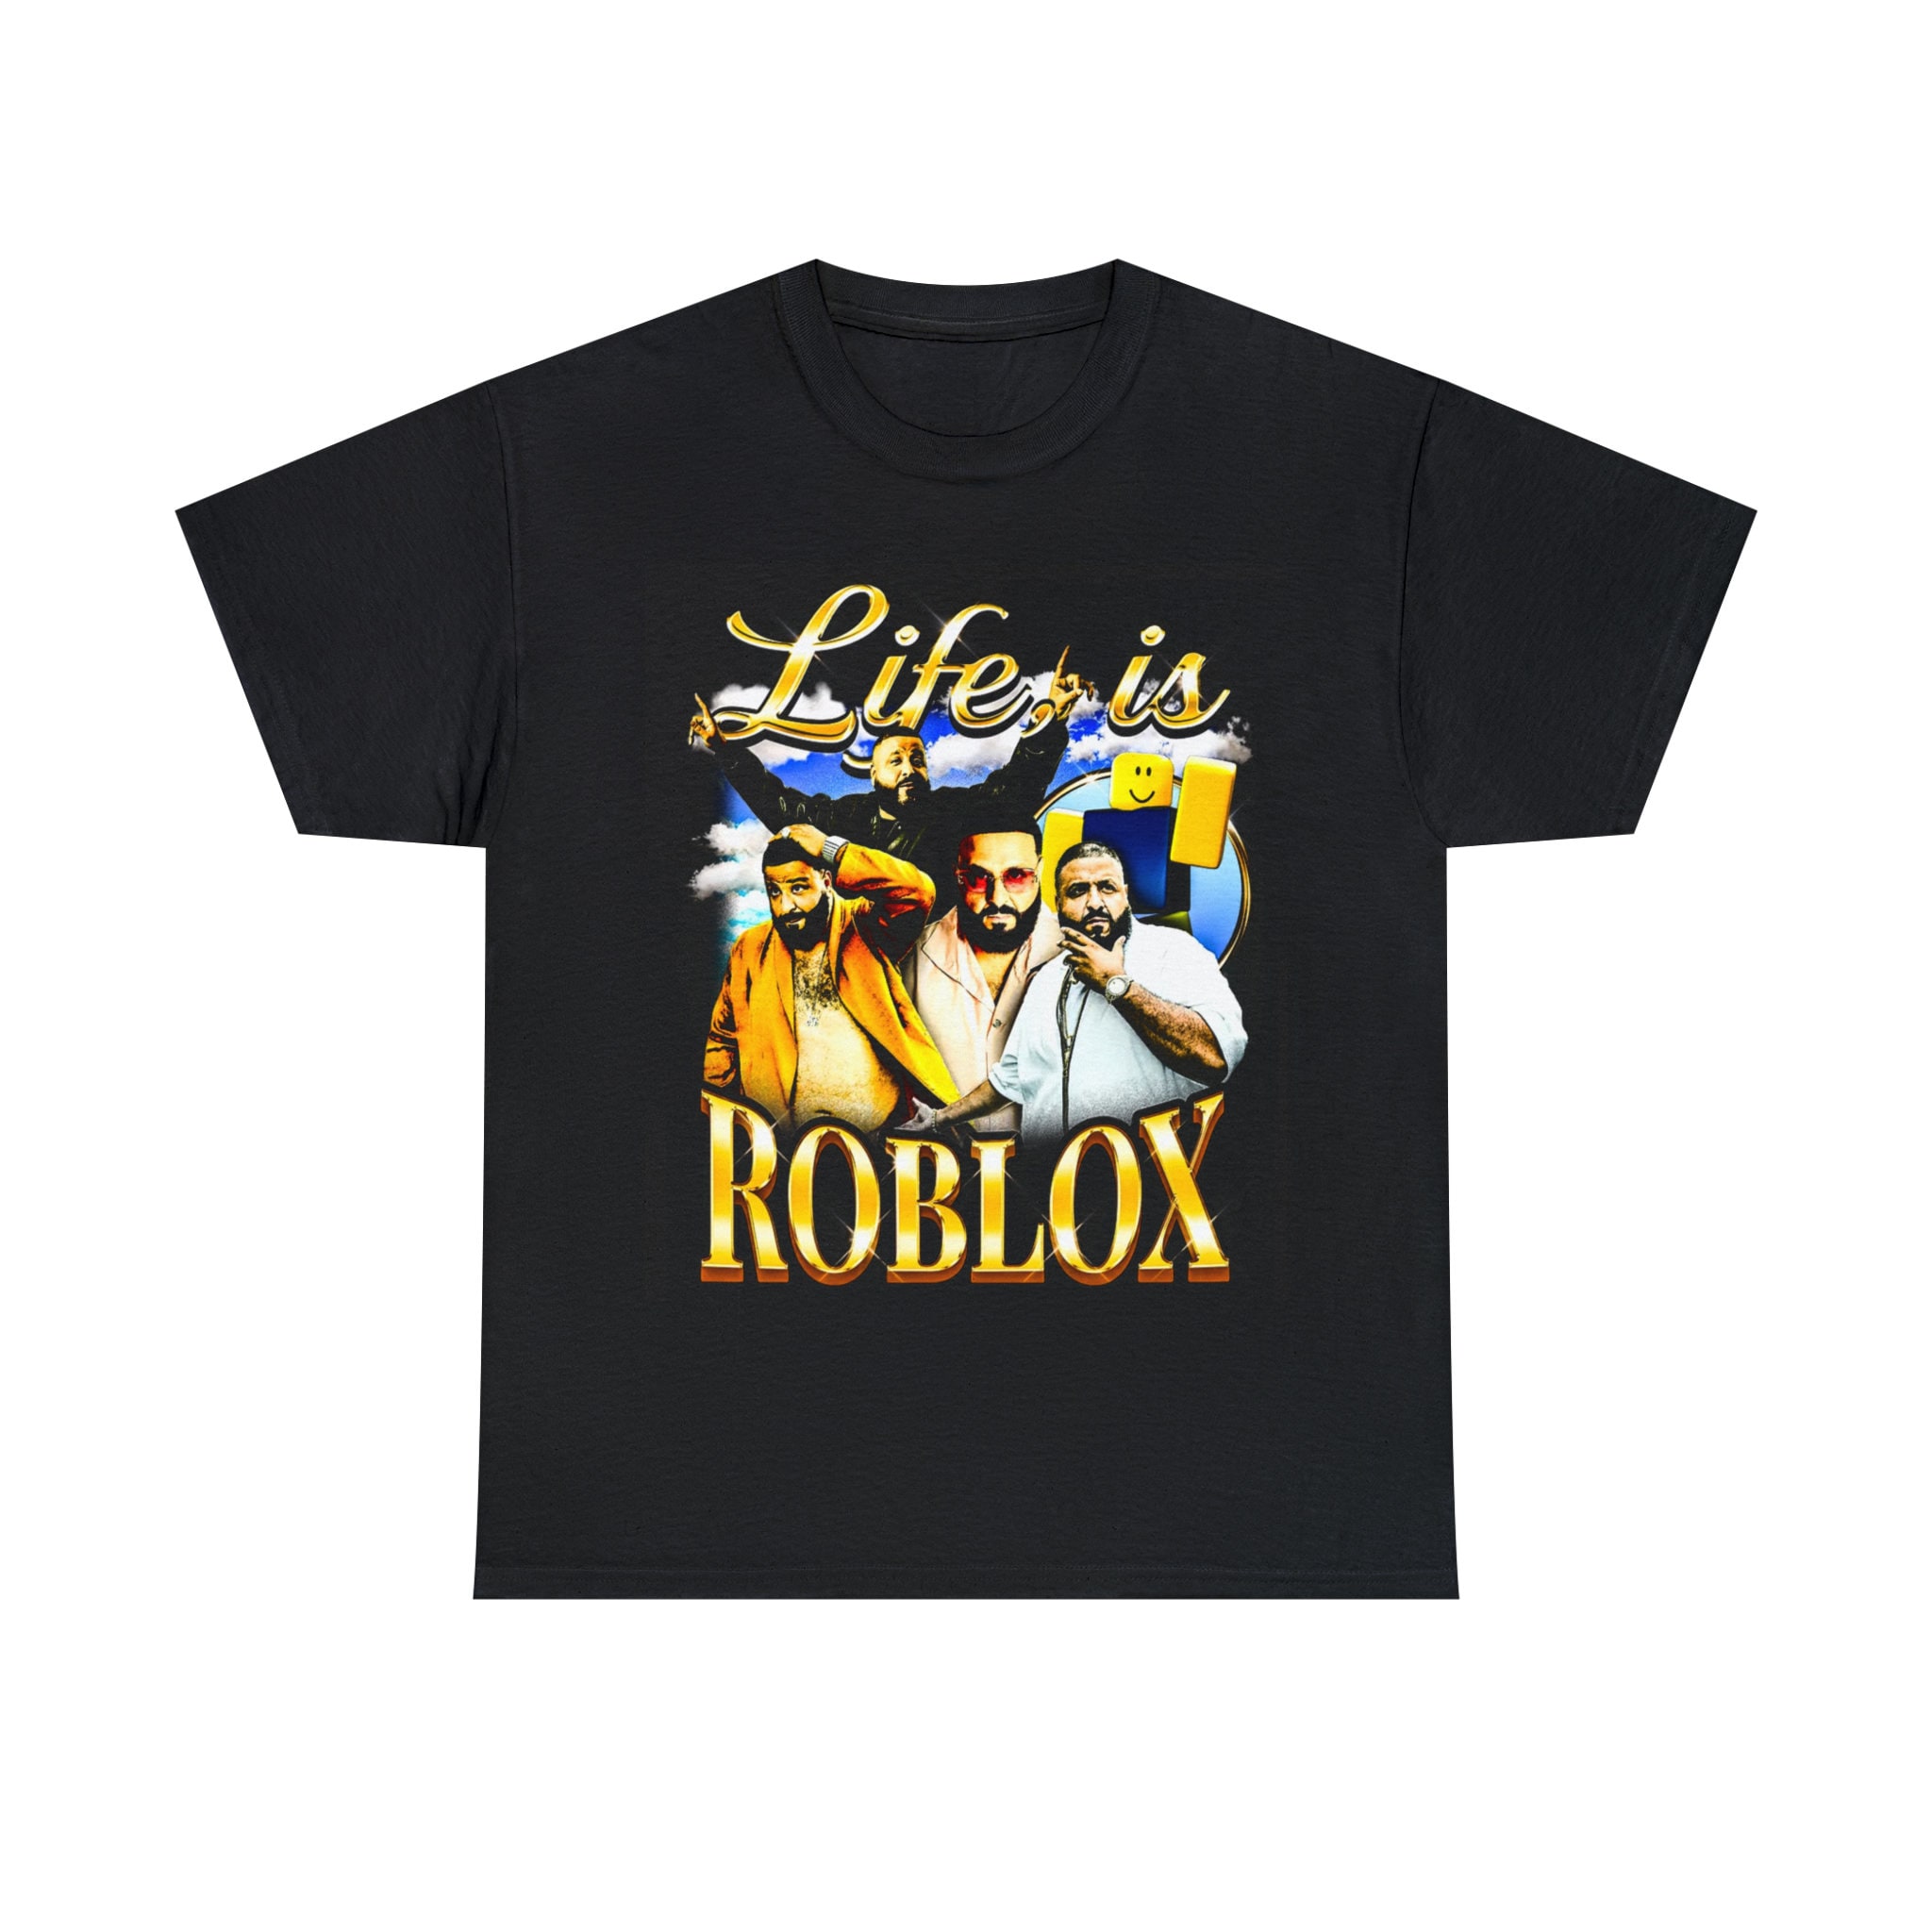 Camisetas Infantil Jogo Roblox Camisa Masculino Feminino